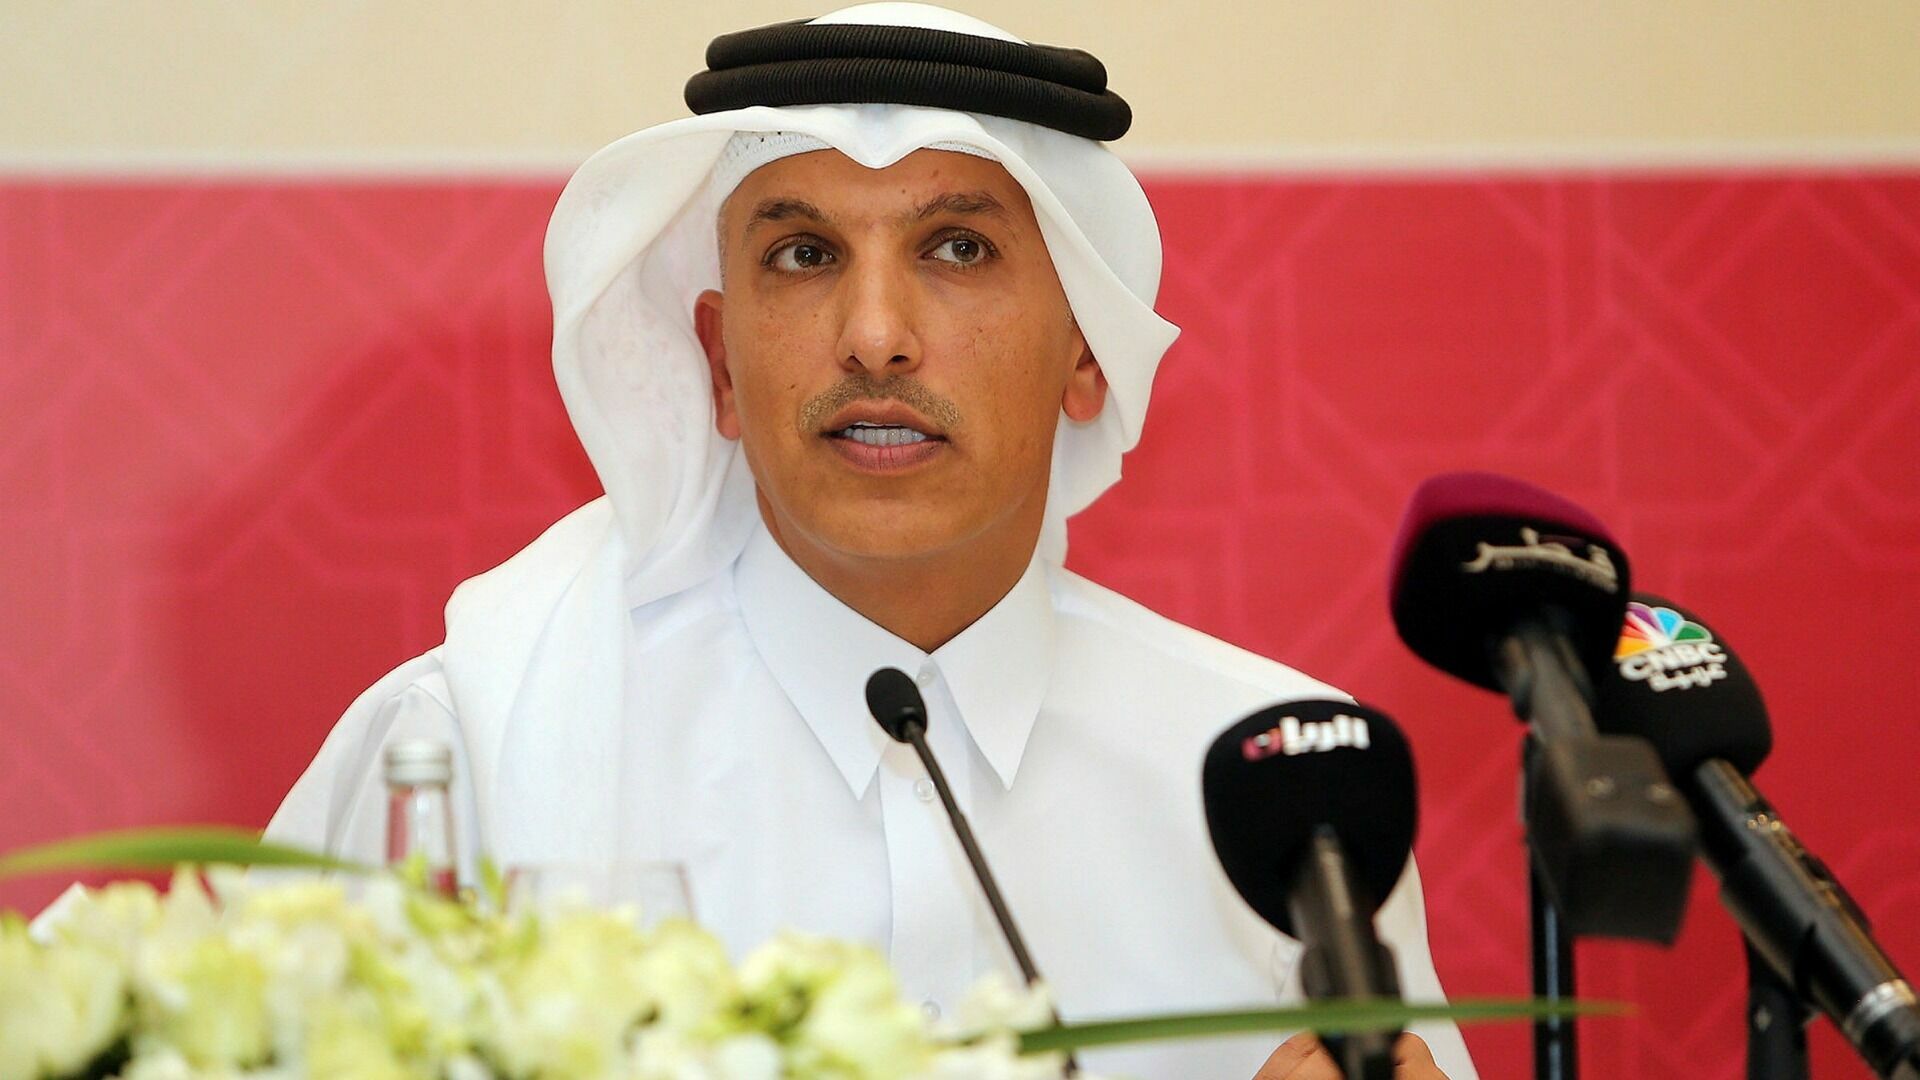 В Катаре за взятки могут казнить  экс-министра финансов аль-Эмади